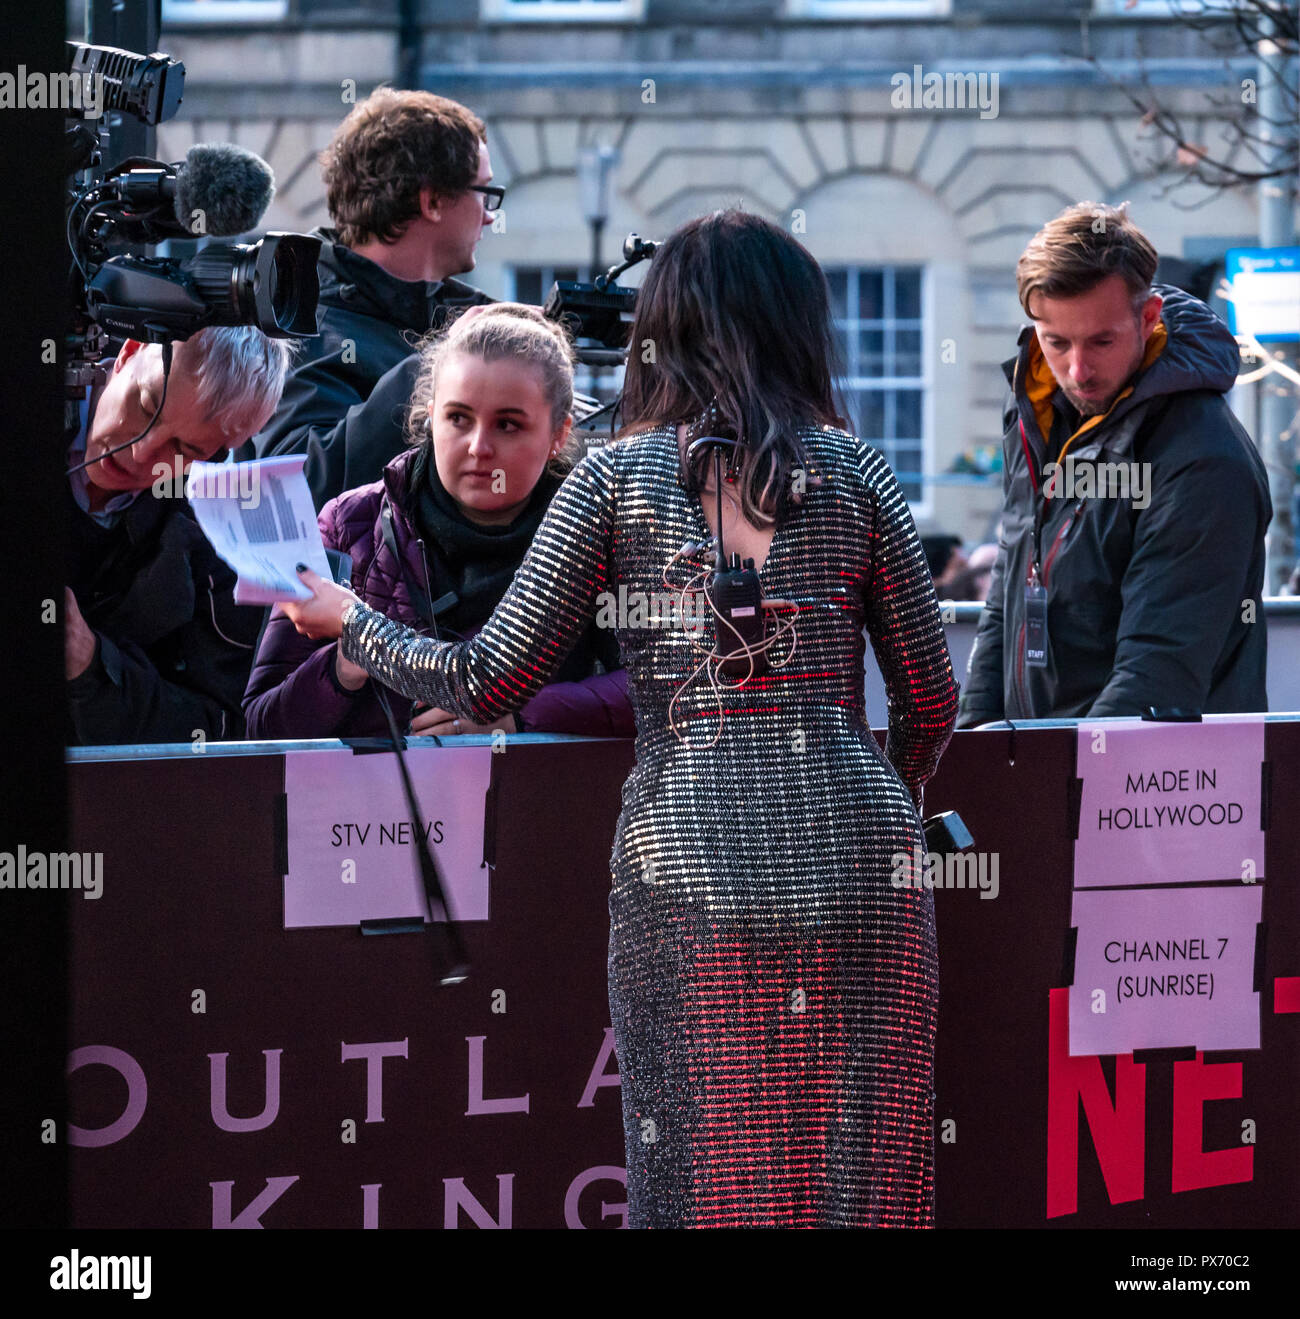 Laura Boyd and STV news team wait for stars at Netflix Outlaw King Scottish premiere, Vue Omni, Edinburgh, Scotland, UK Stock Photo